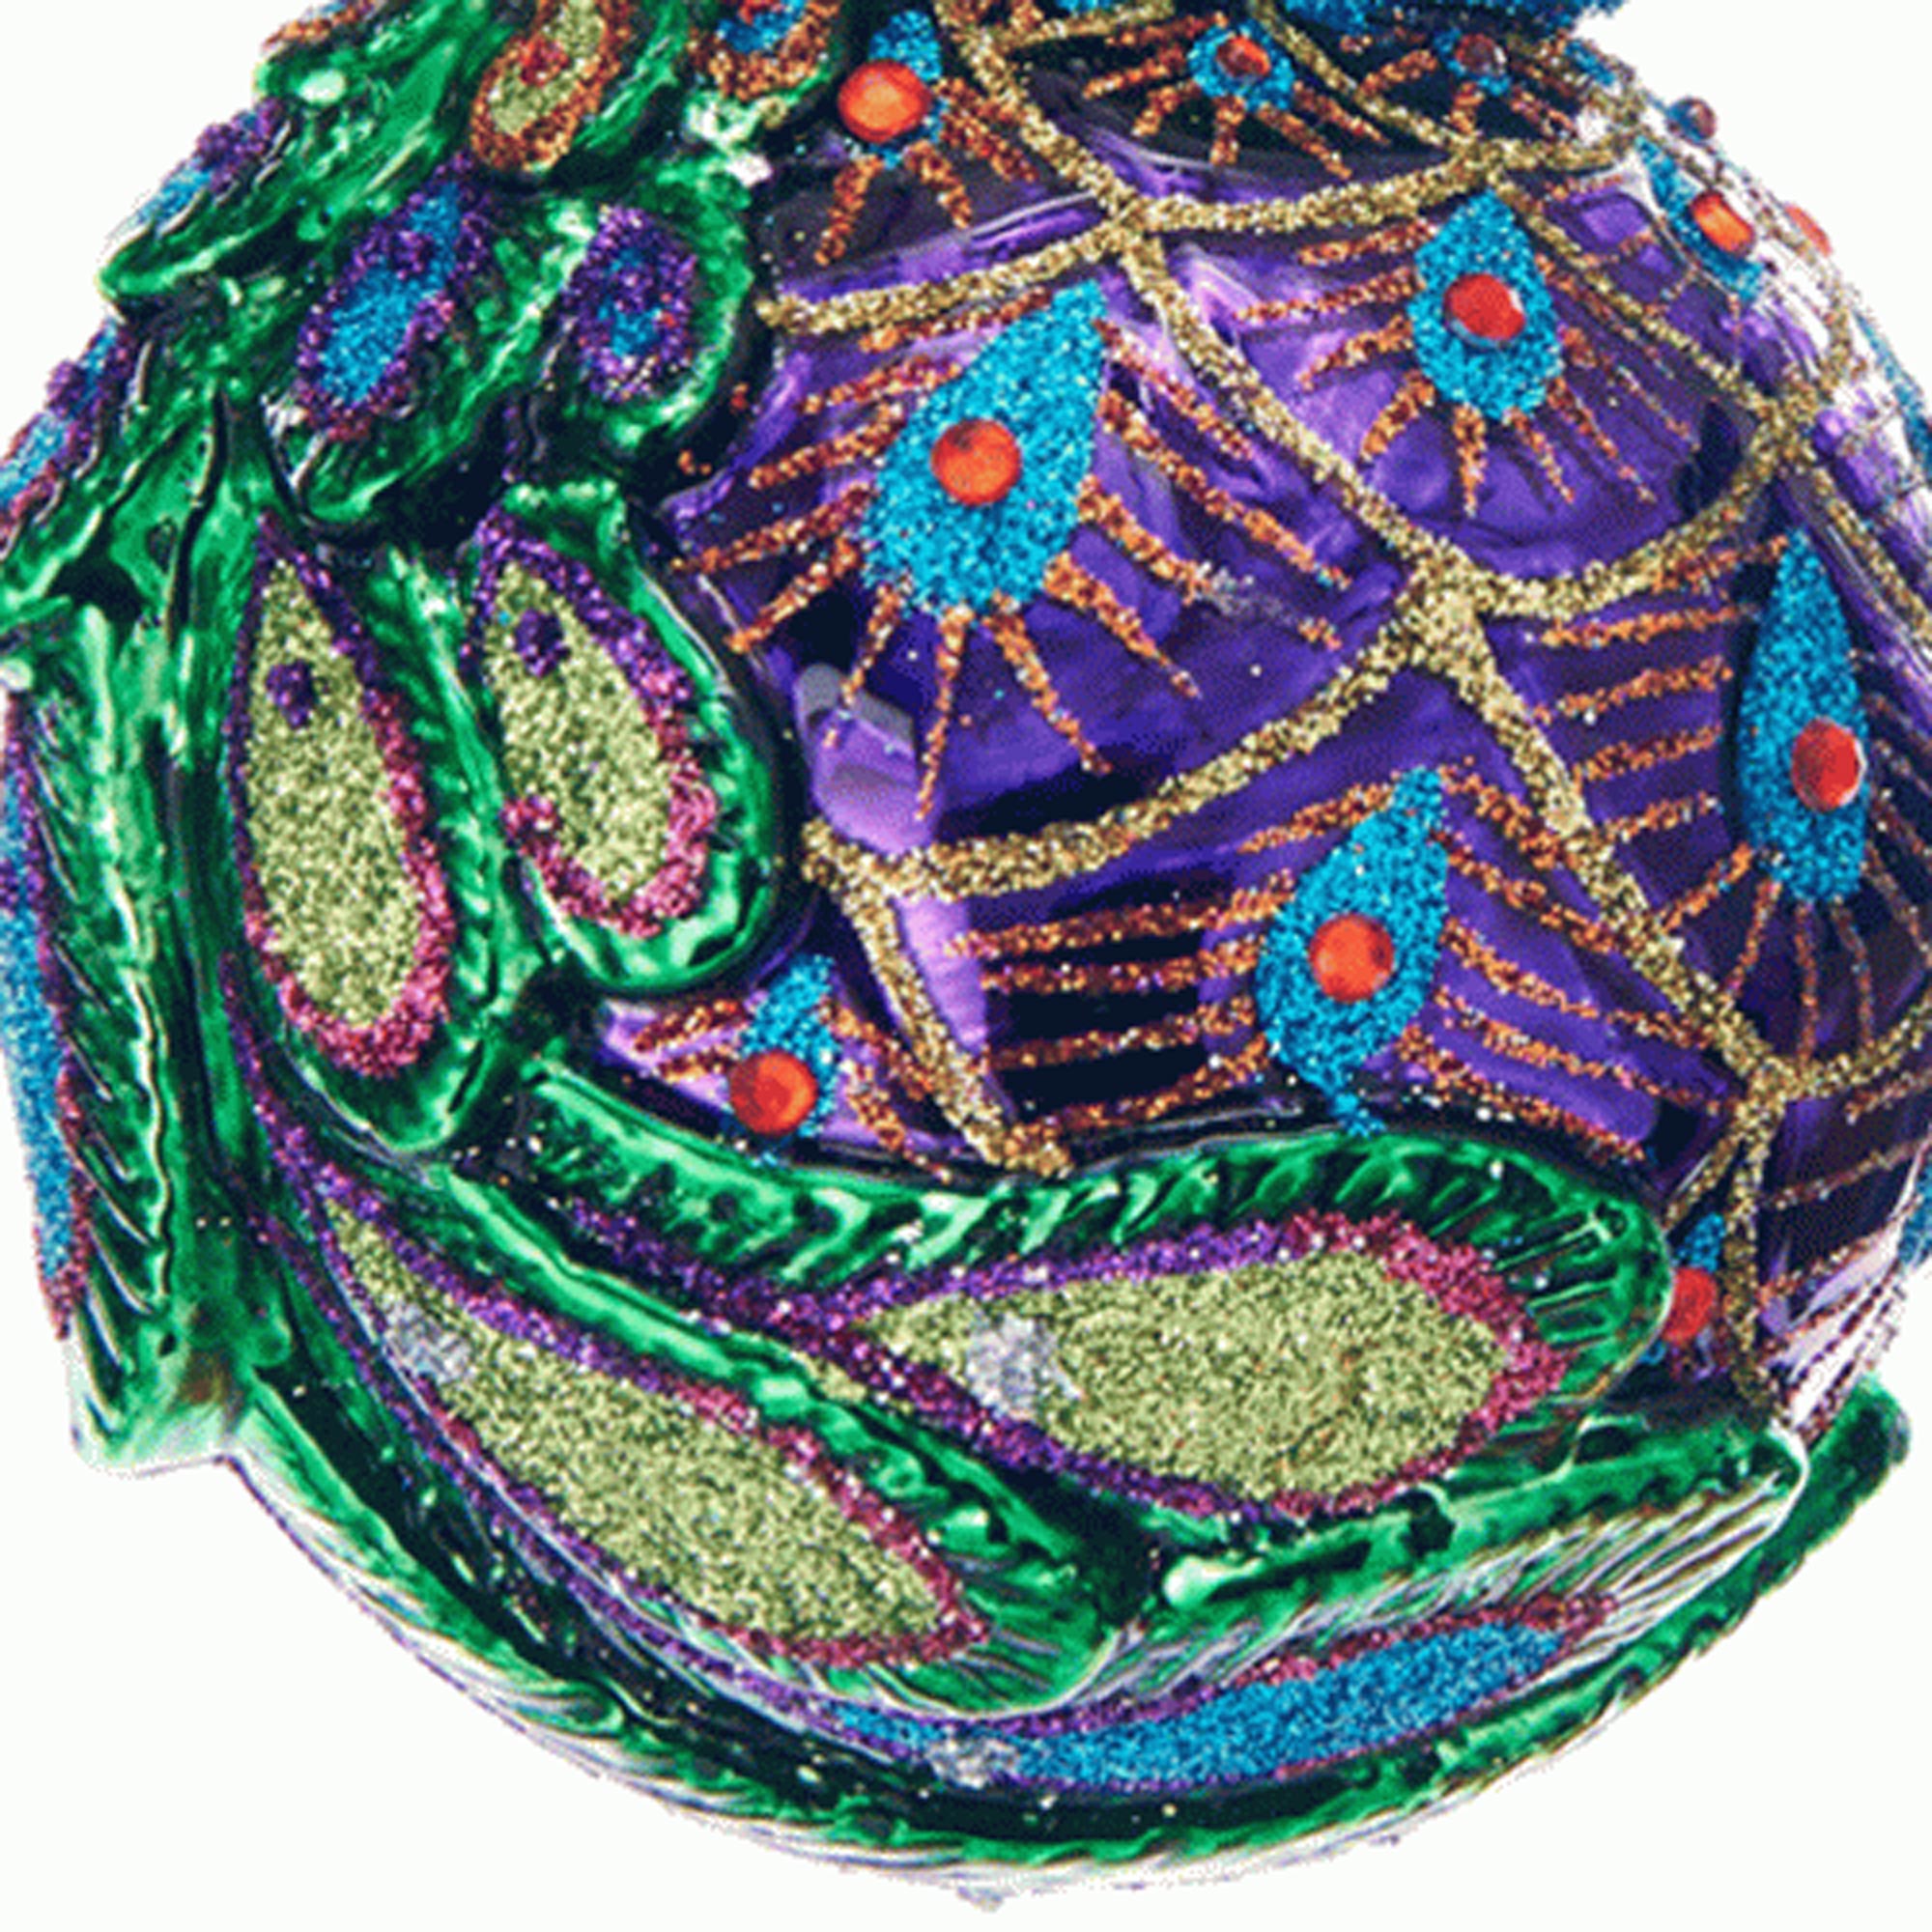 Kurt Adler 5 Noble Gems Glass Peacock Ornament